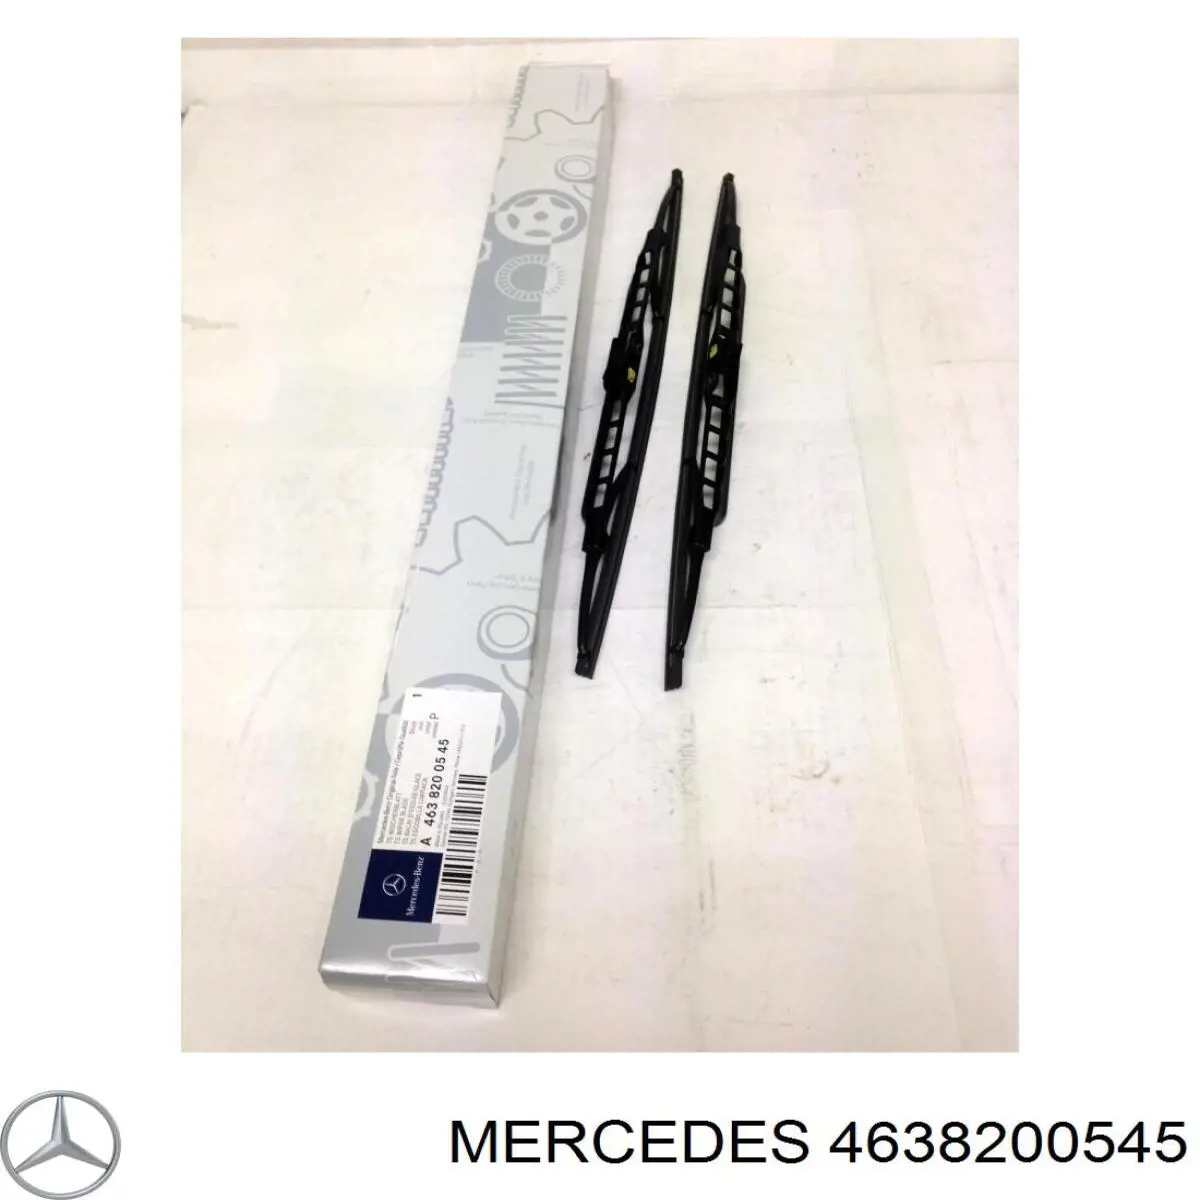 4638200545 Mercedes щетка-дворник лобового стекла, комплект из 2 шт.